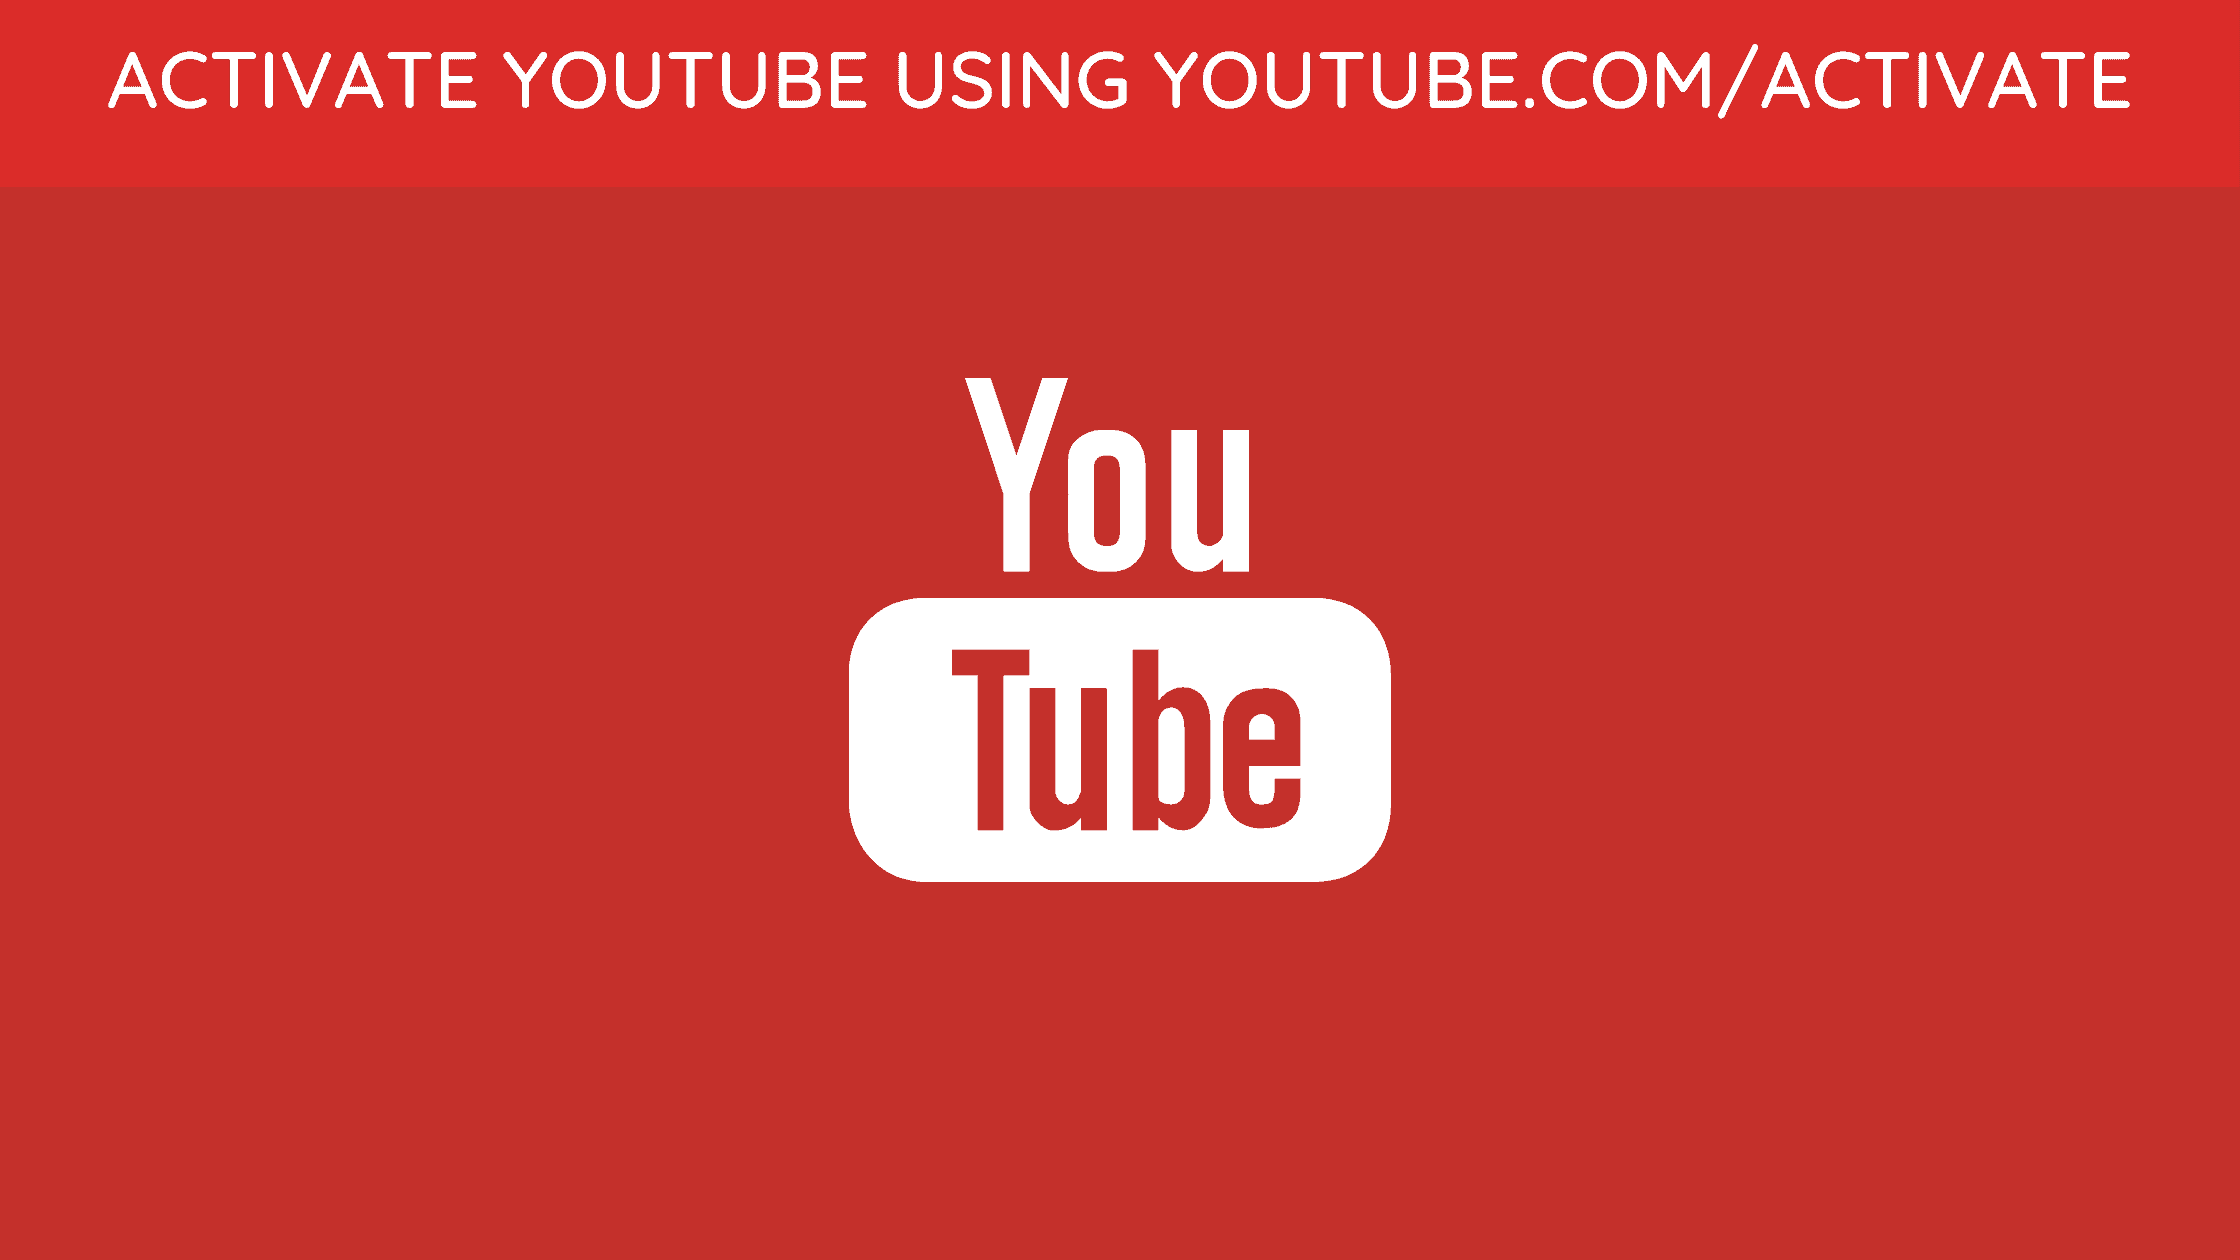 Ютуб активейт ссылка. Ютуб активейт. Youtube activate. Ютуб.com activate. Youtube.com/activate youtube.com/activate.